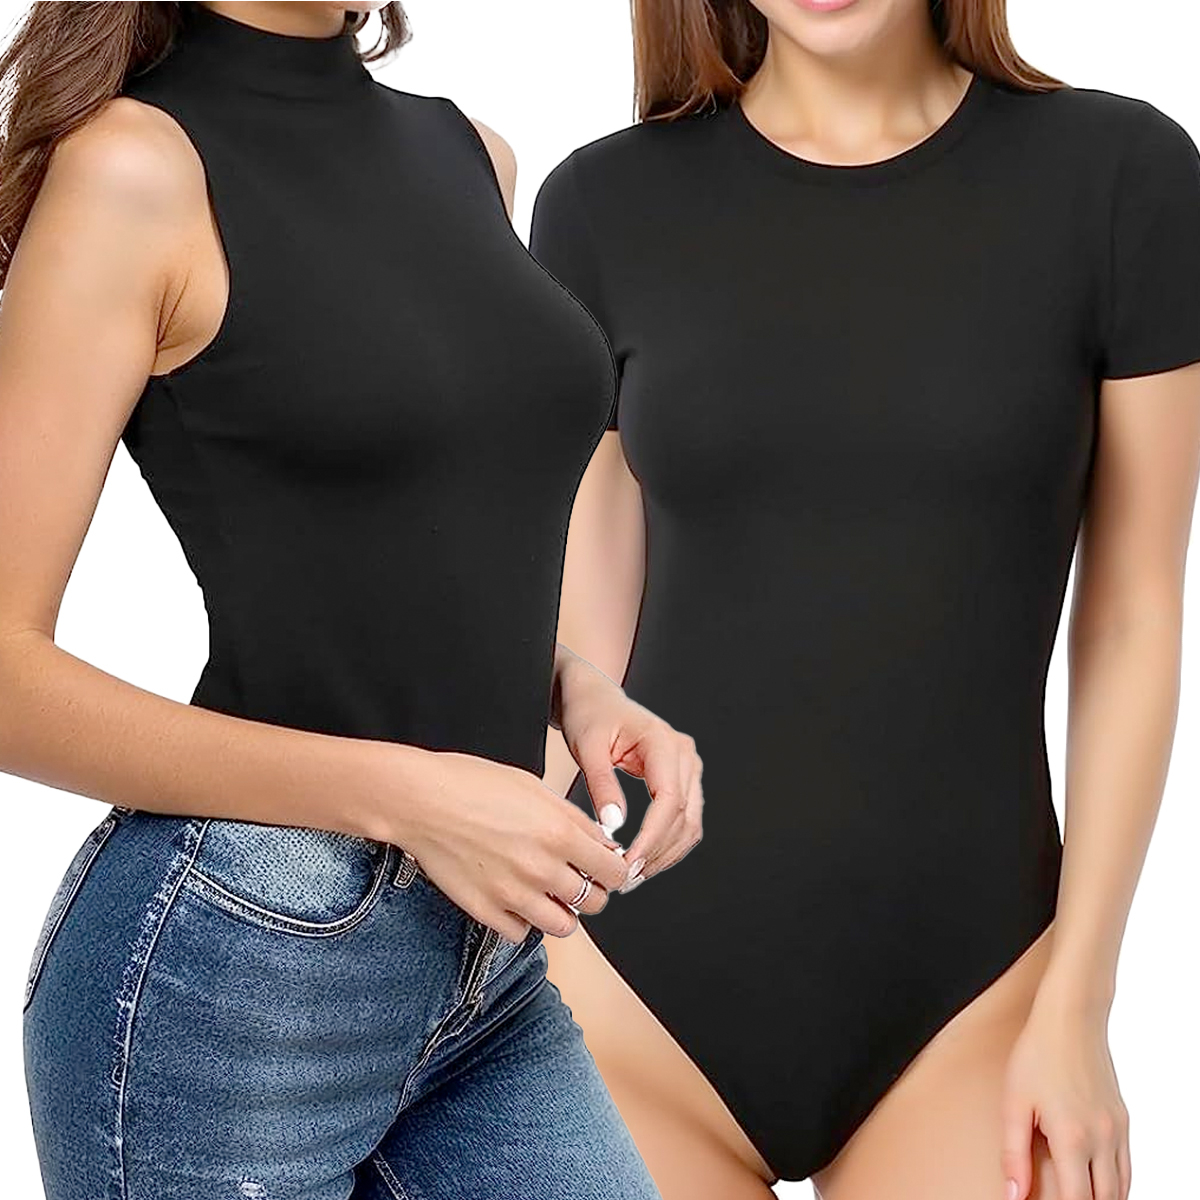  MANGOPOP Women's Sexy Cutout Front T Shirt Long Sleeve